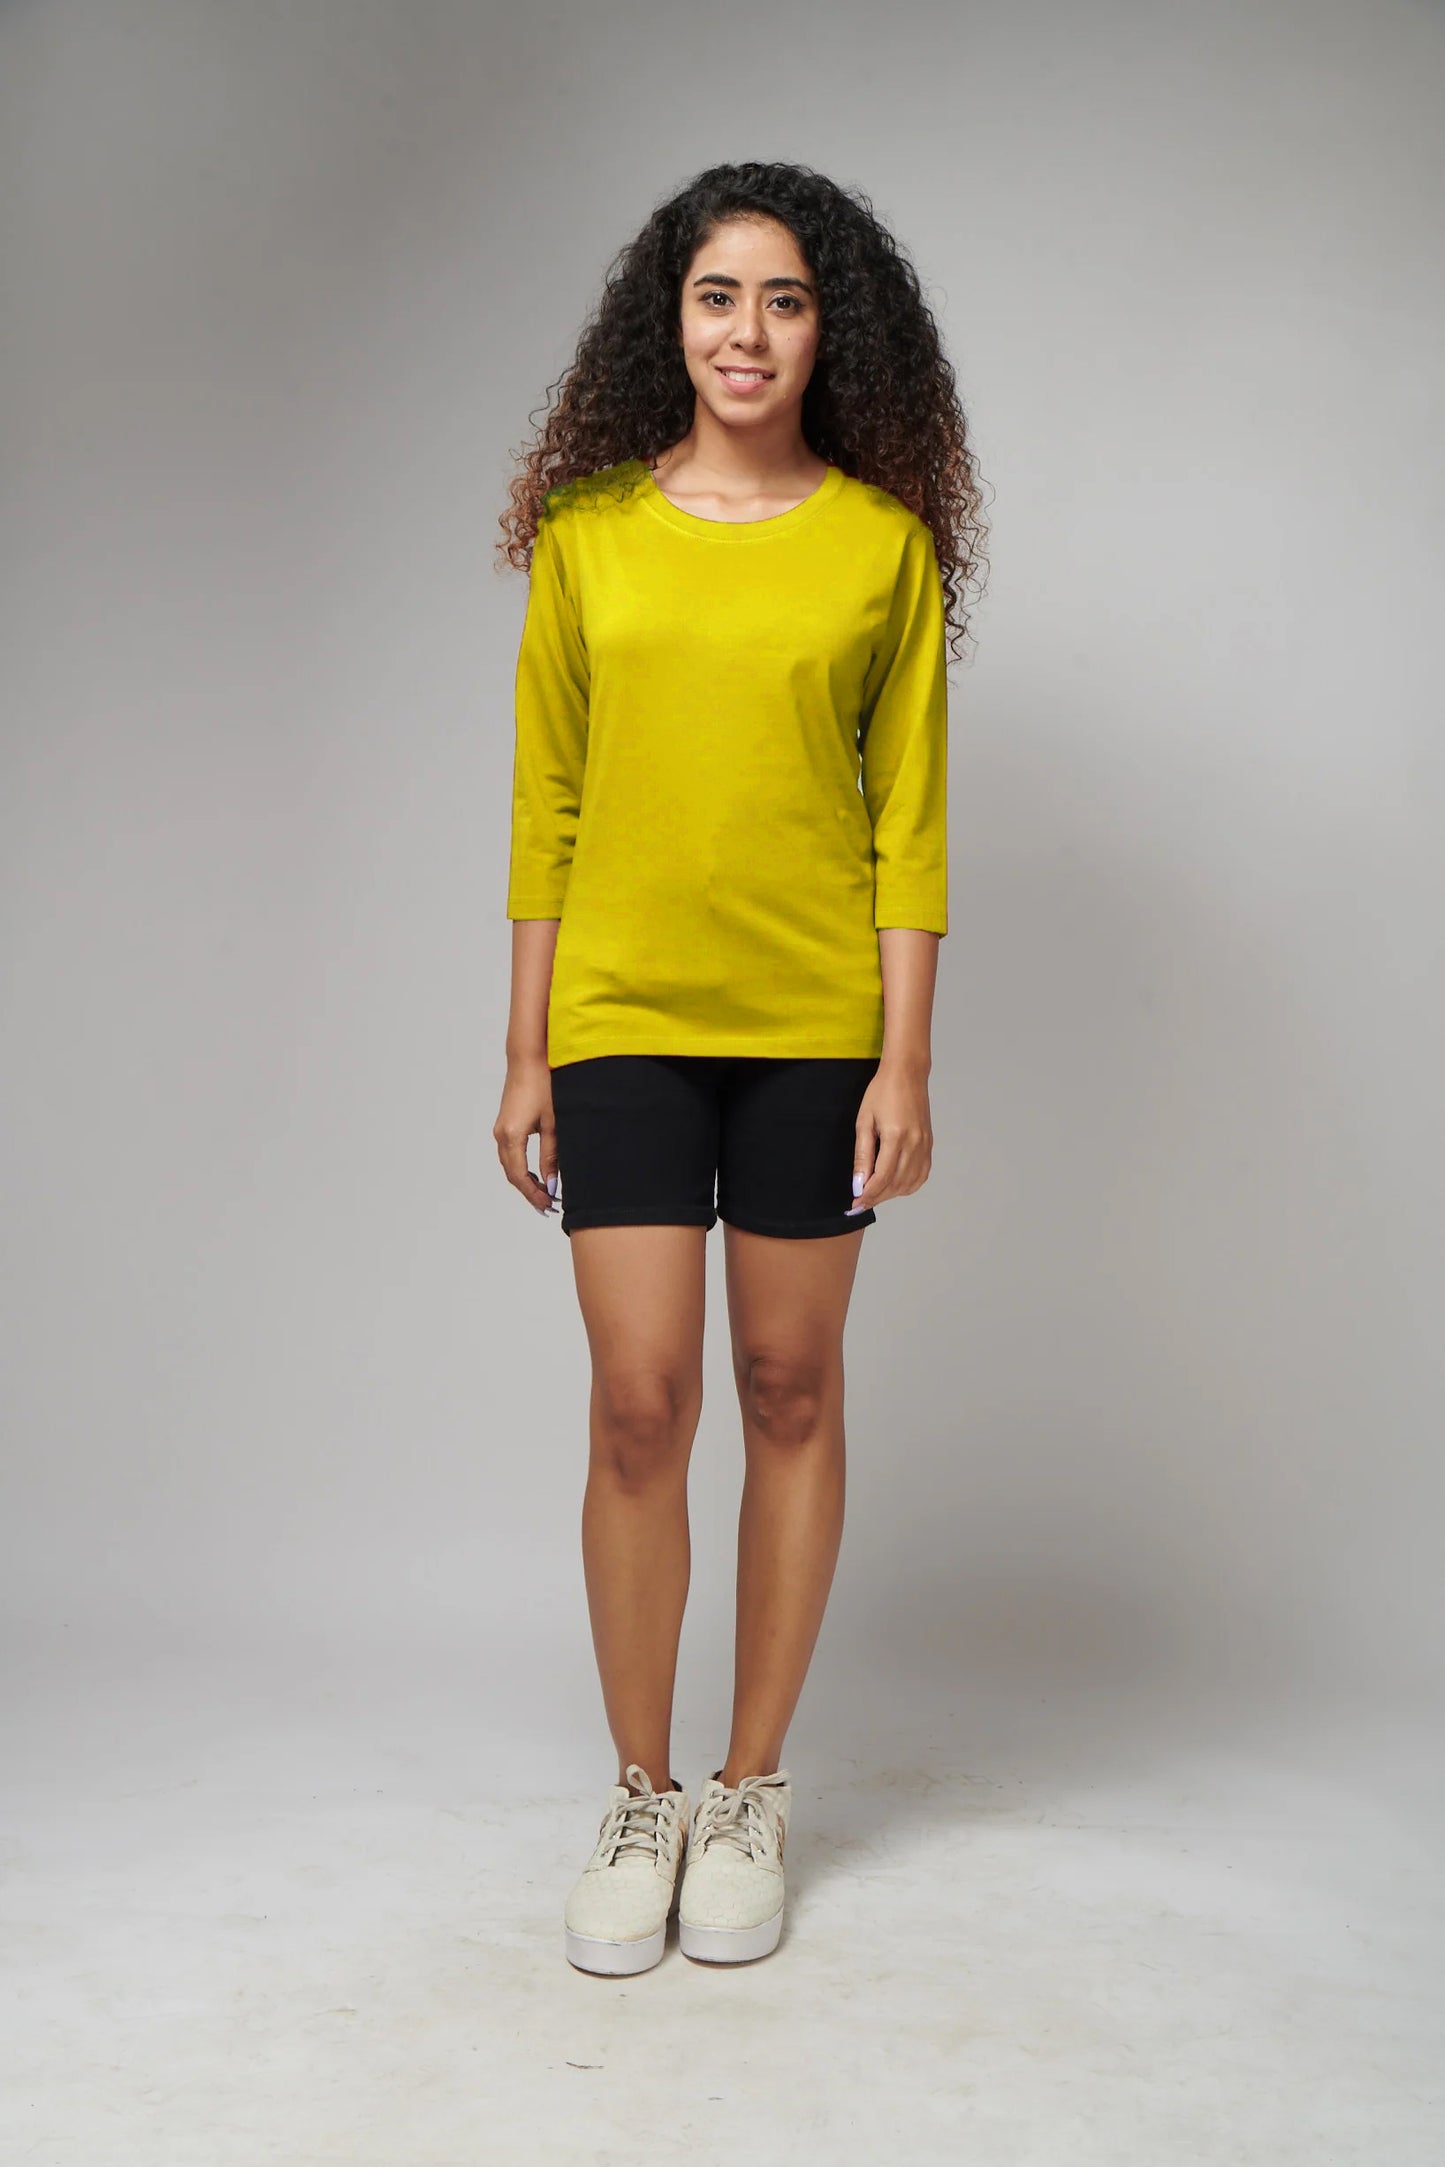 Women's Basic Yellow Full Sleeves T-Shirt